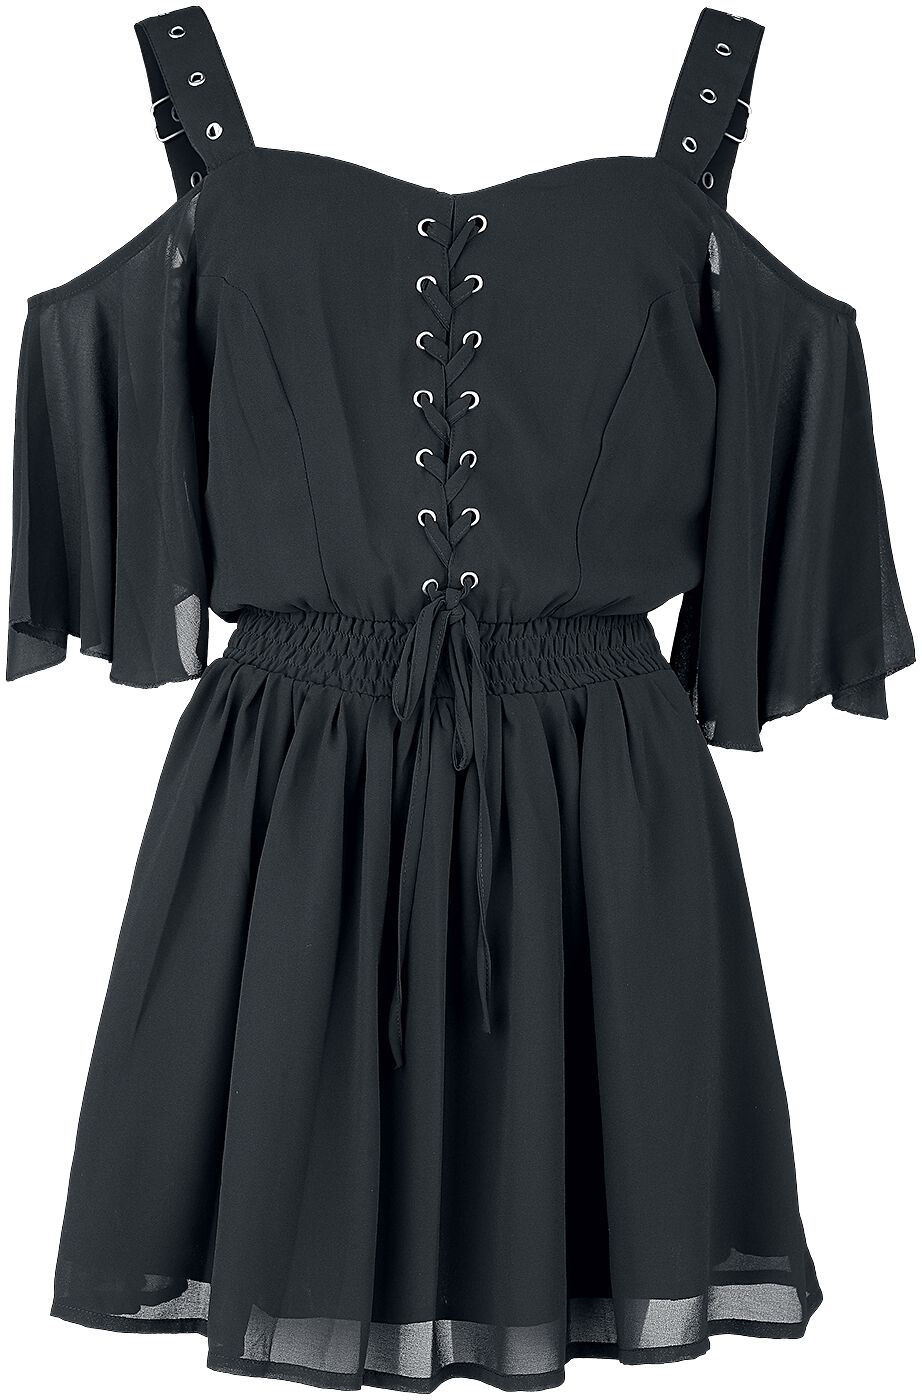 Poizen Industries - Gothic Kurzes Kleid - Catastrophe Dress - XS bis XL - für Damen - Größe XS - schwarz von Poizen Industries